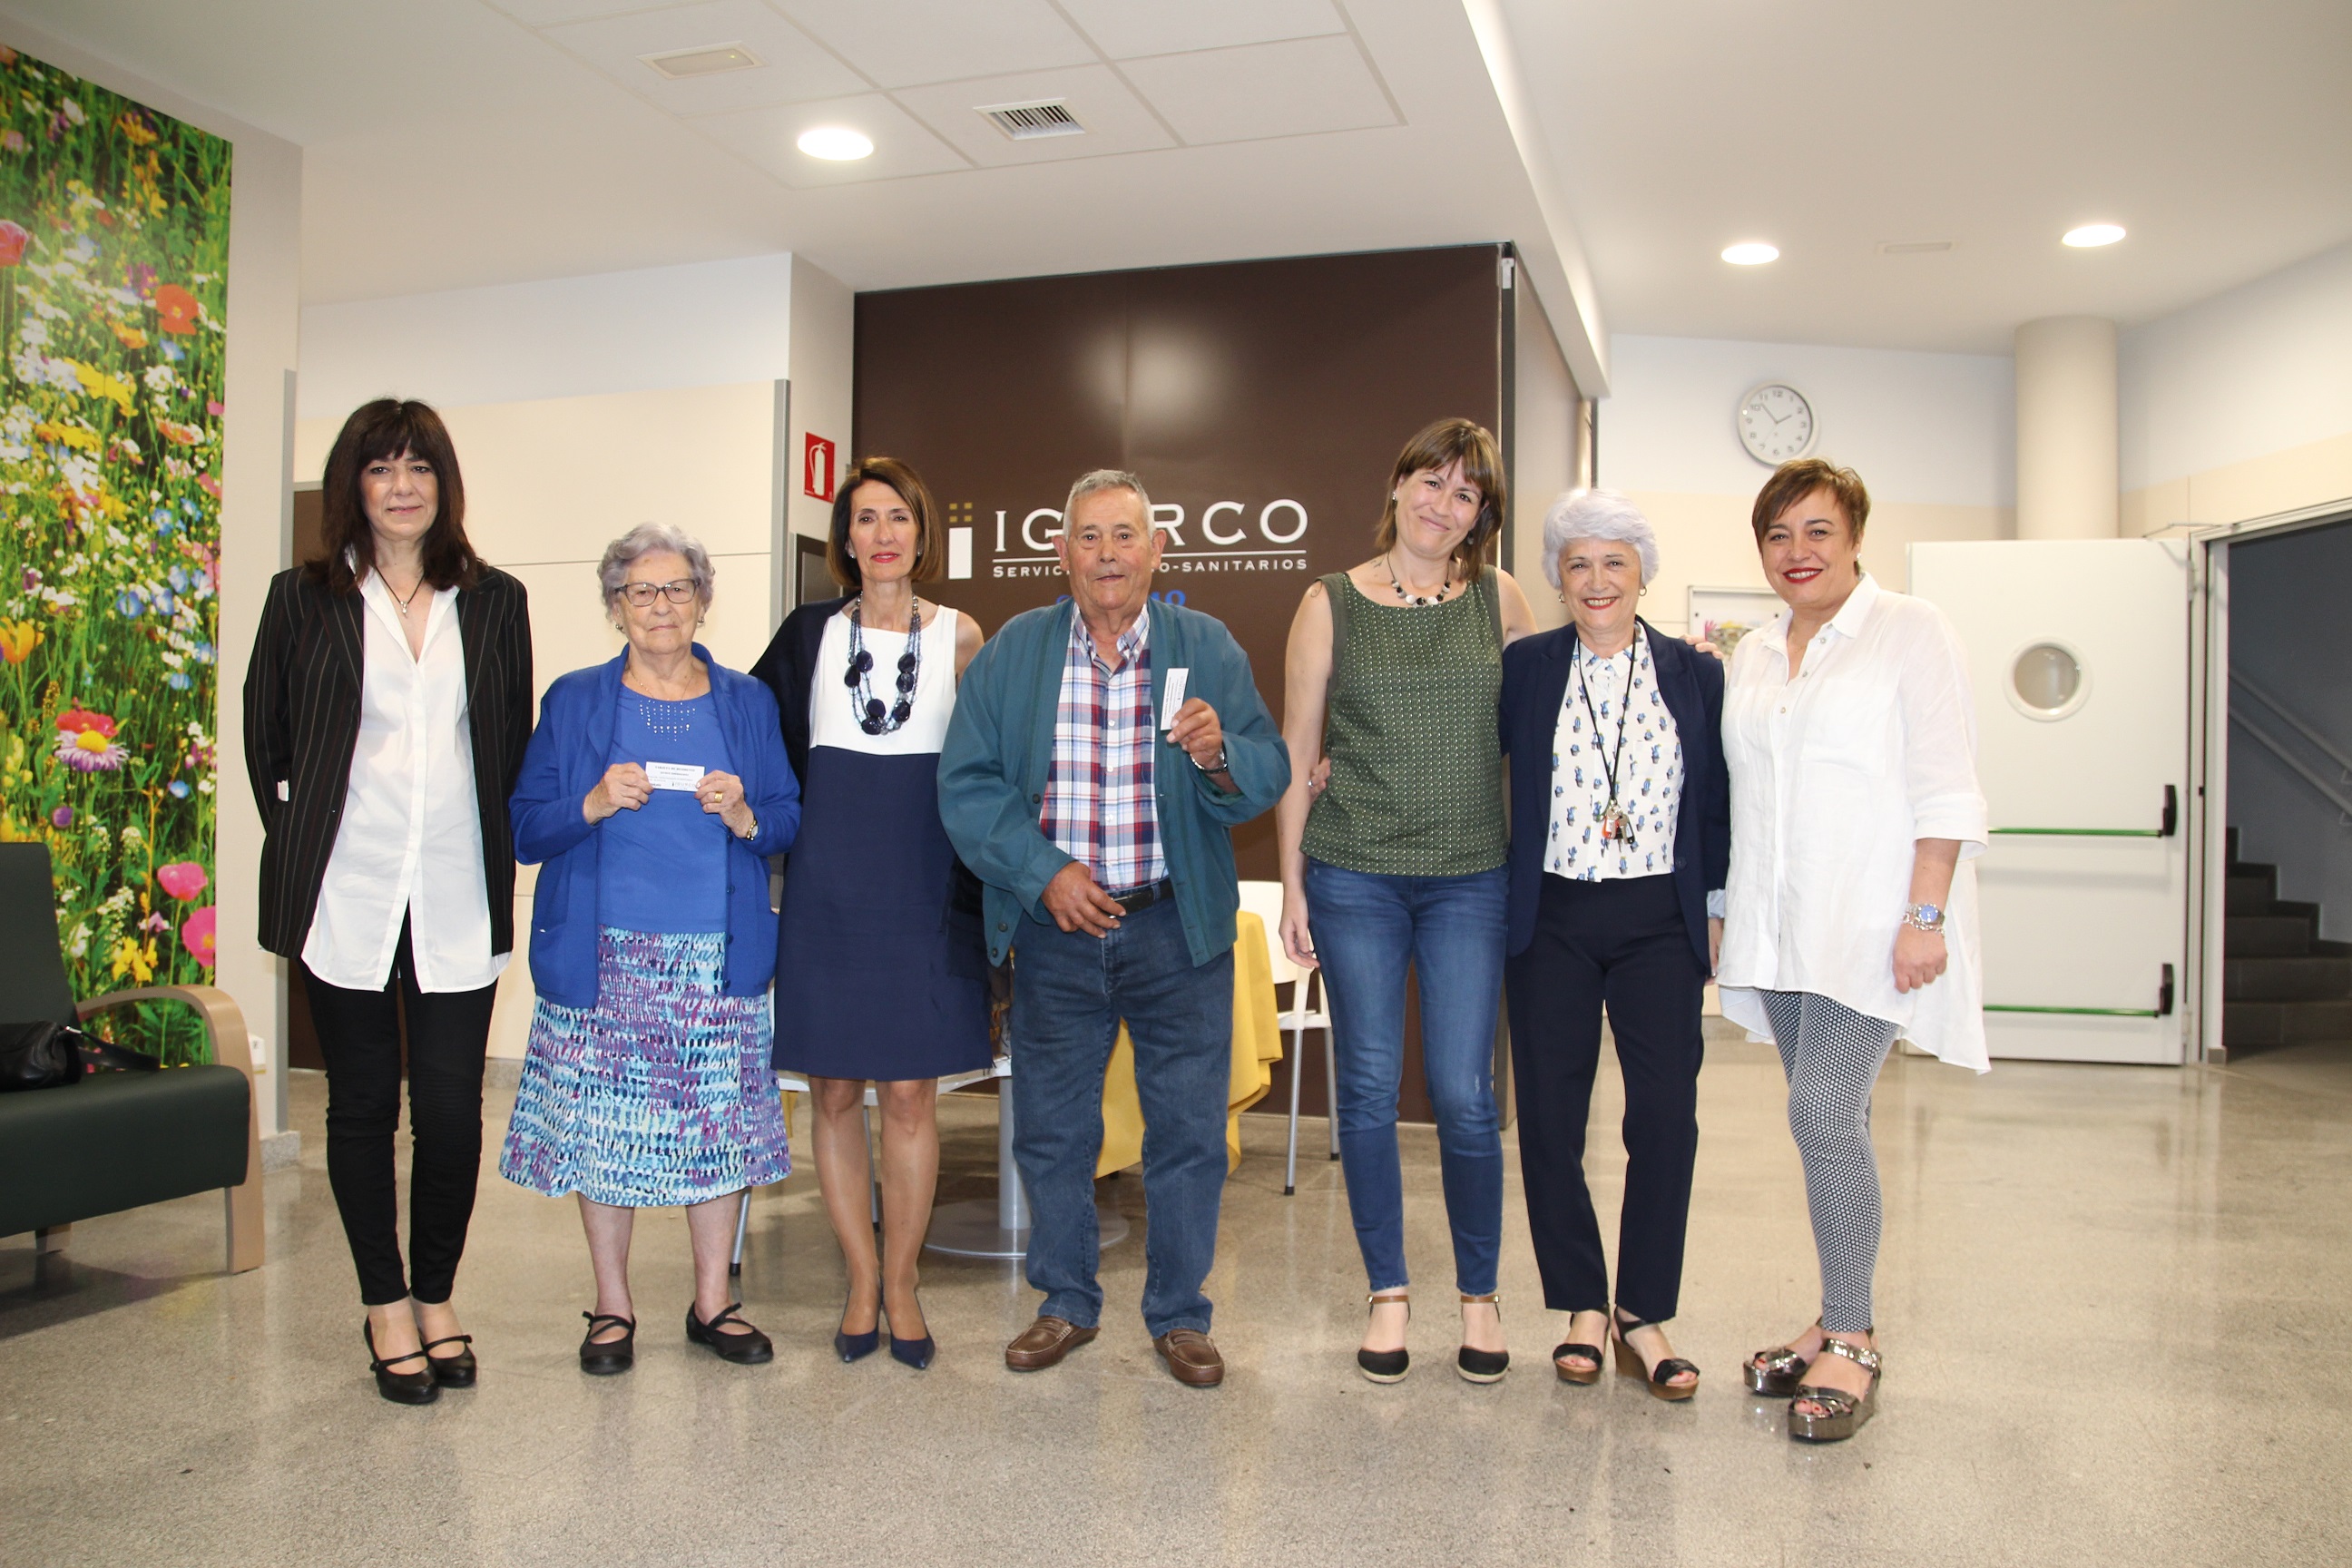 La residencia foral de personas mayores Igurco Zorrozgoiti firma un acuerdo de colaboración con la Asociación de Comerciantes de Zorroza